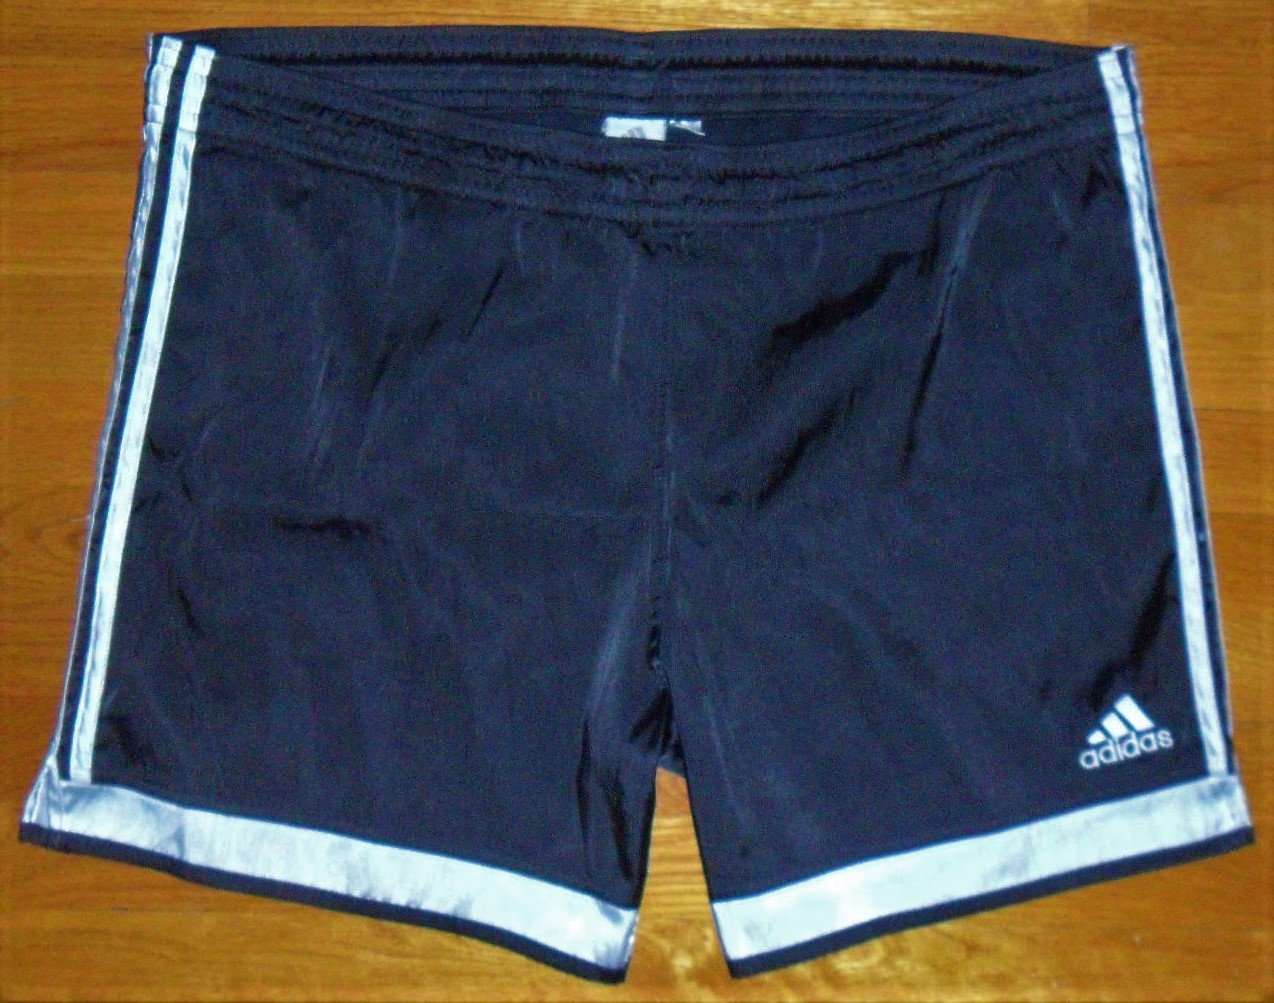 eksil Metafor Rough sleep Vintage Adidas Soccer Shorts XL Black White Climalite Spezial - Etsy